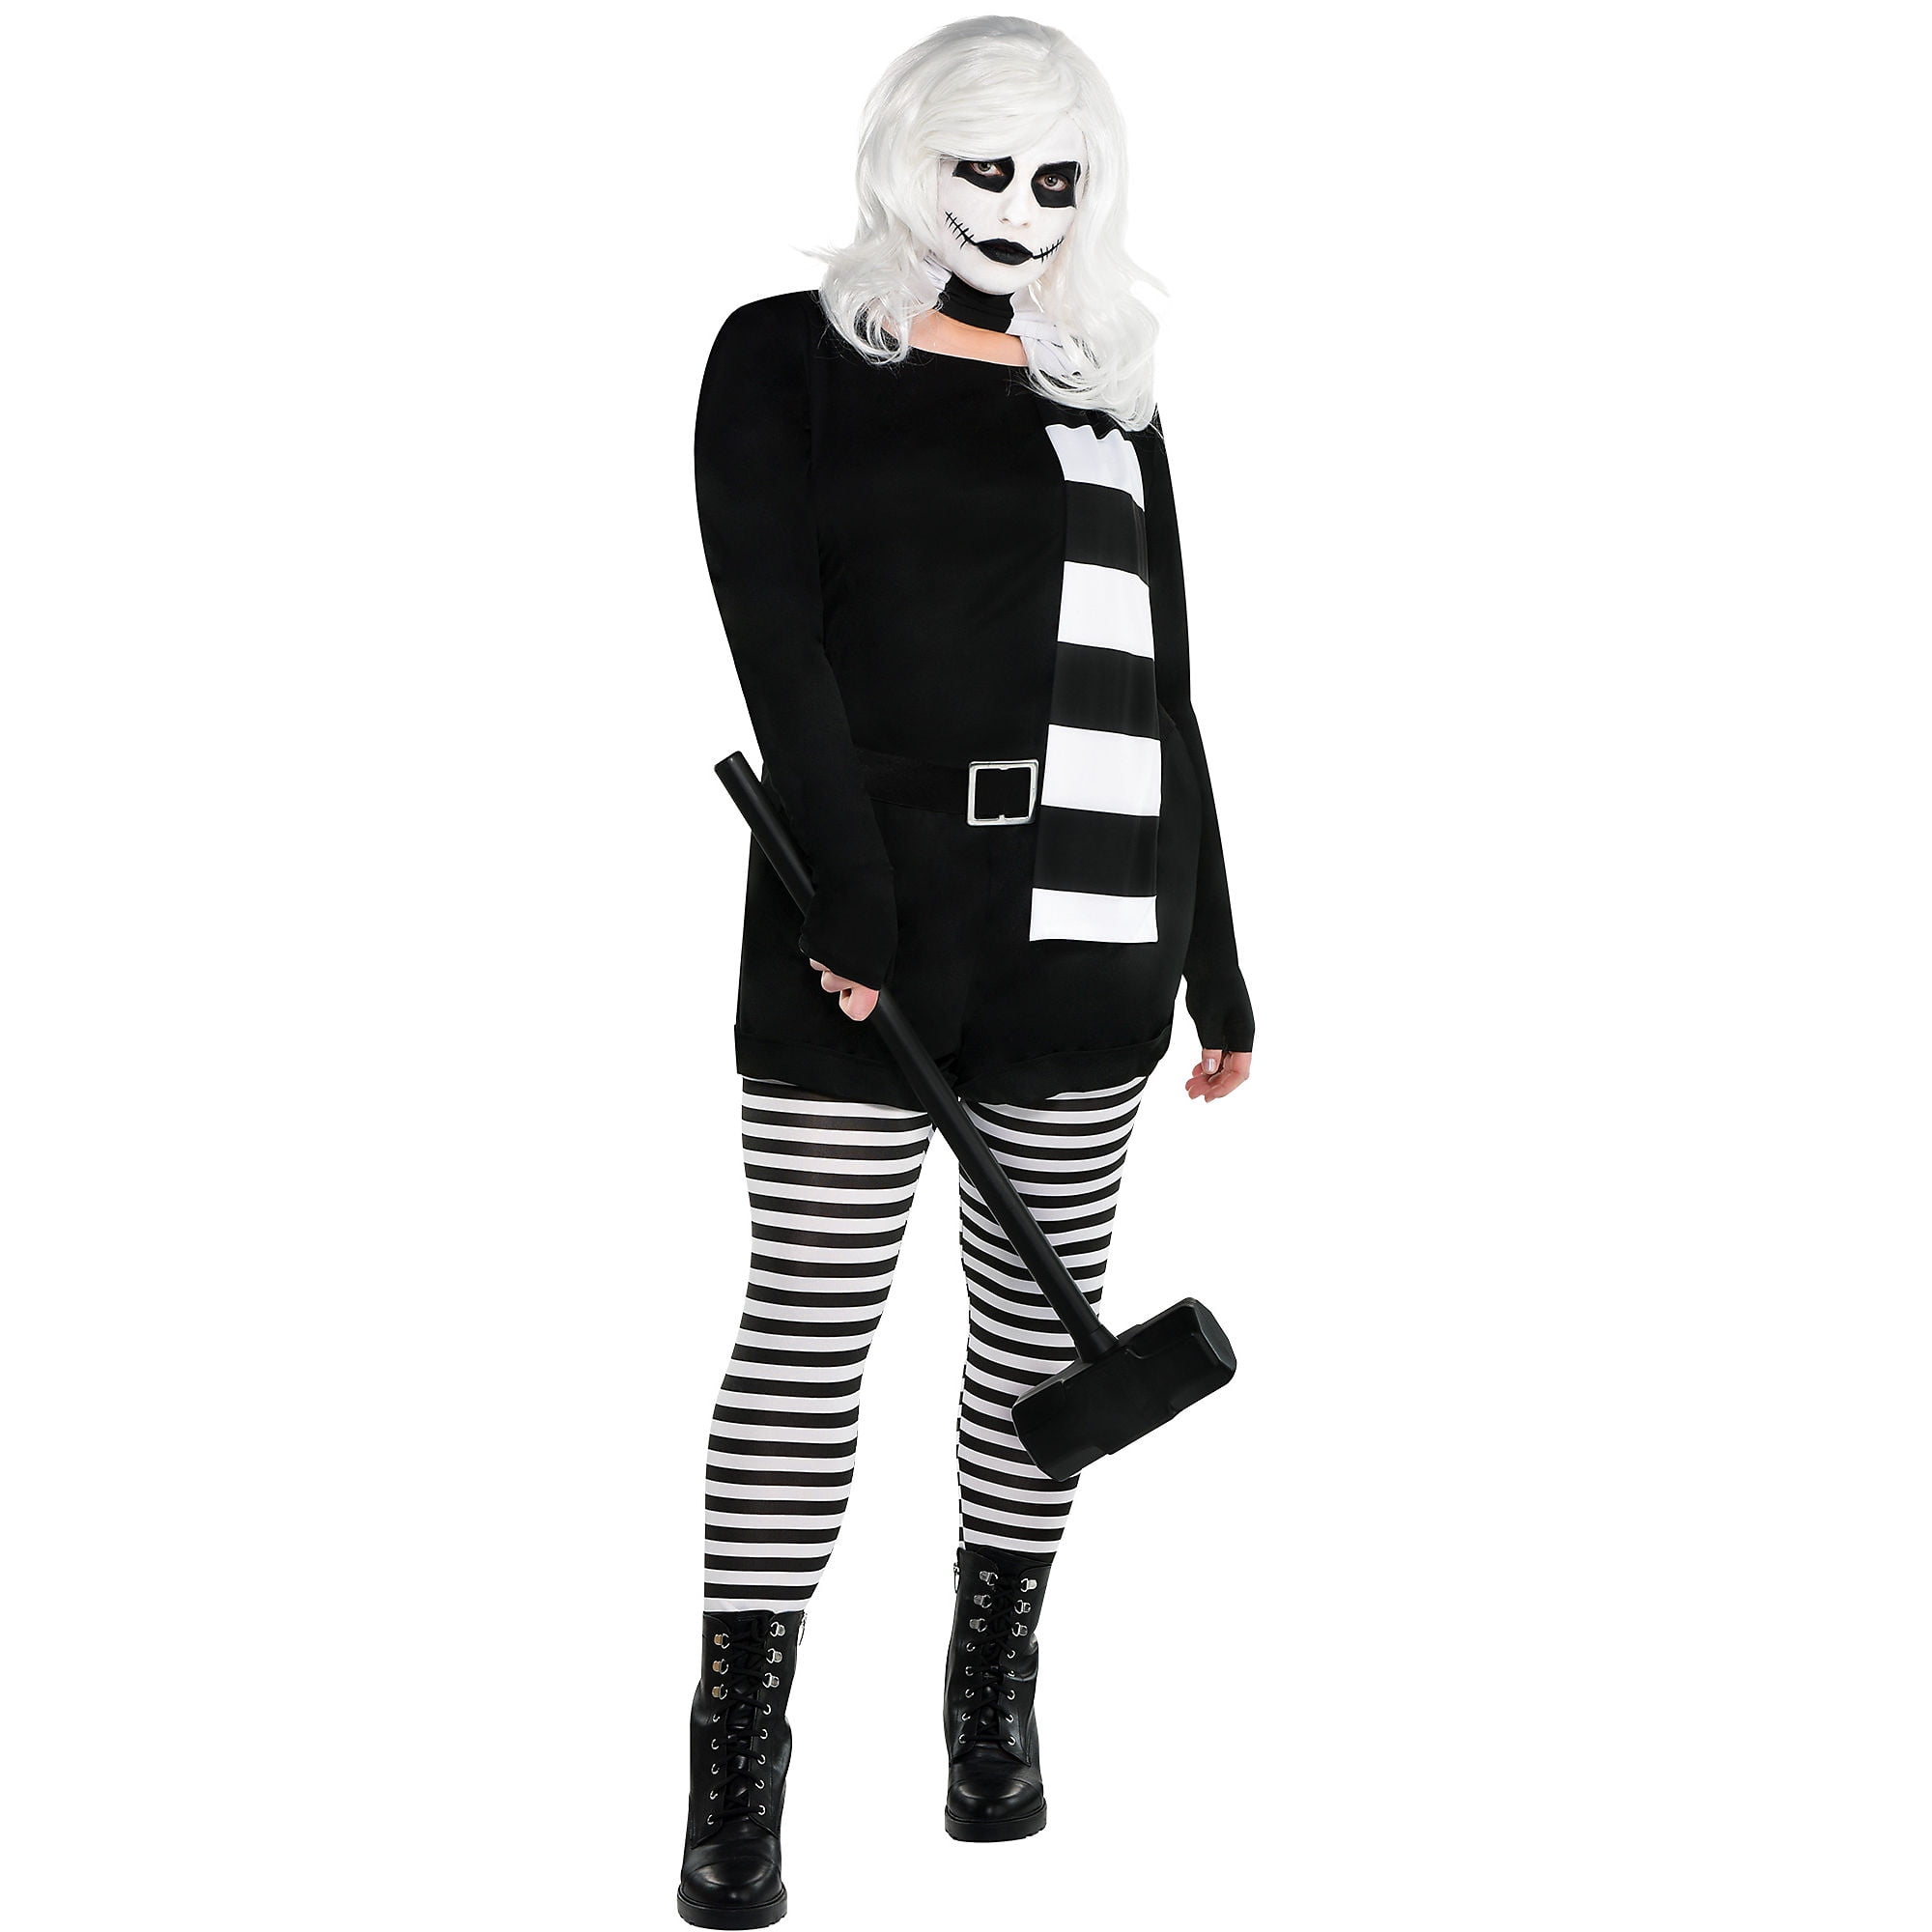 efterår Udelukke Bevæger sig ikke Party City Alice the Psycho Halloween Costume for Women, Plus Size (18-20),  Includes Jumpsuit, Scarf and Wig - Walmart.com